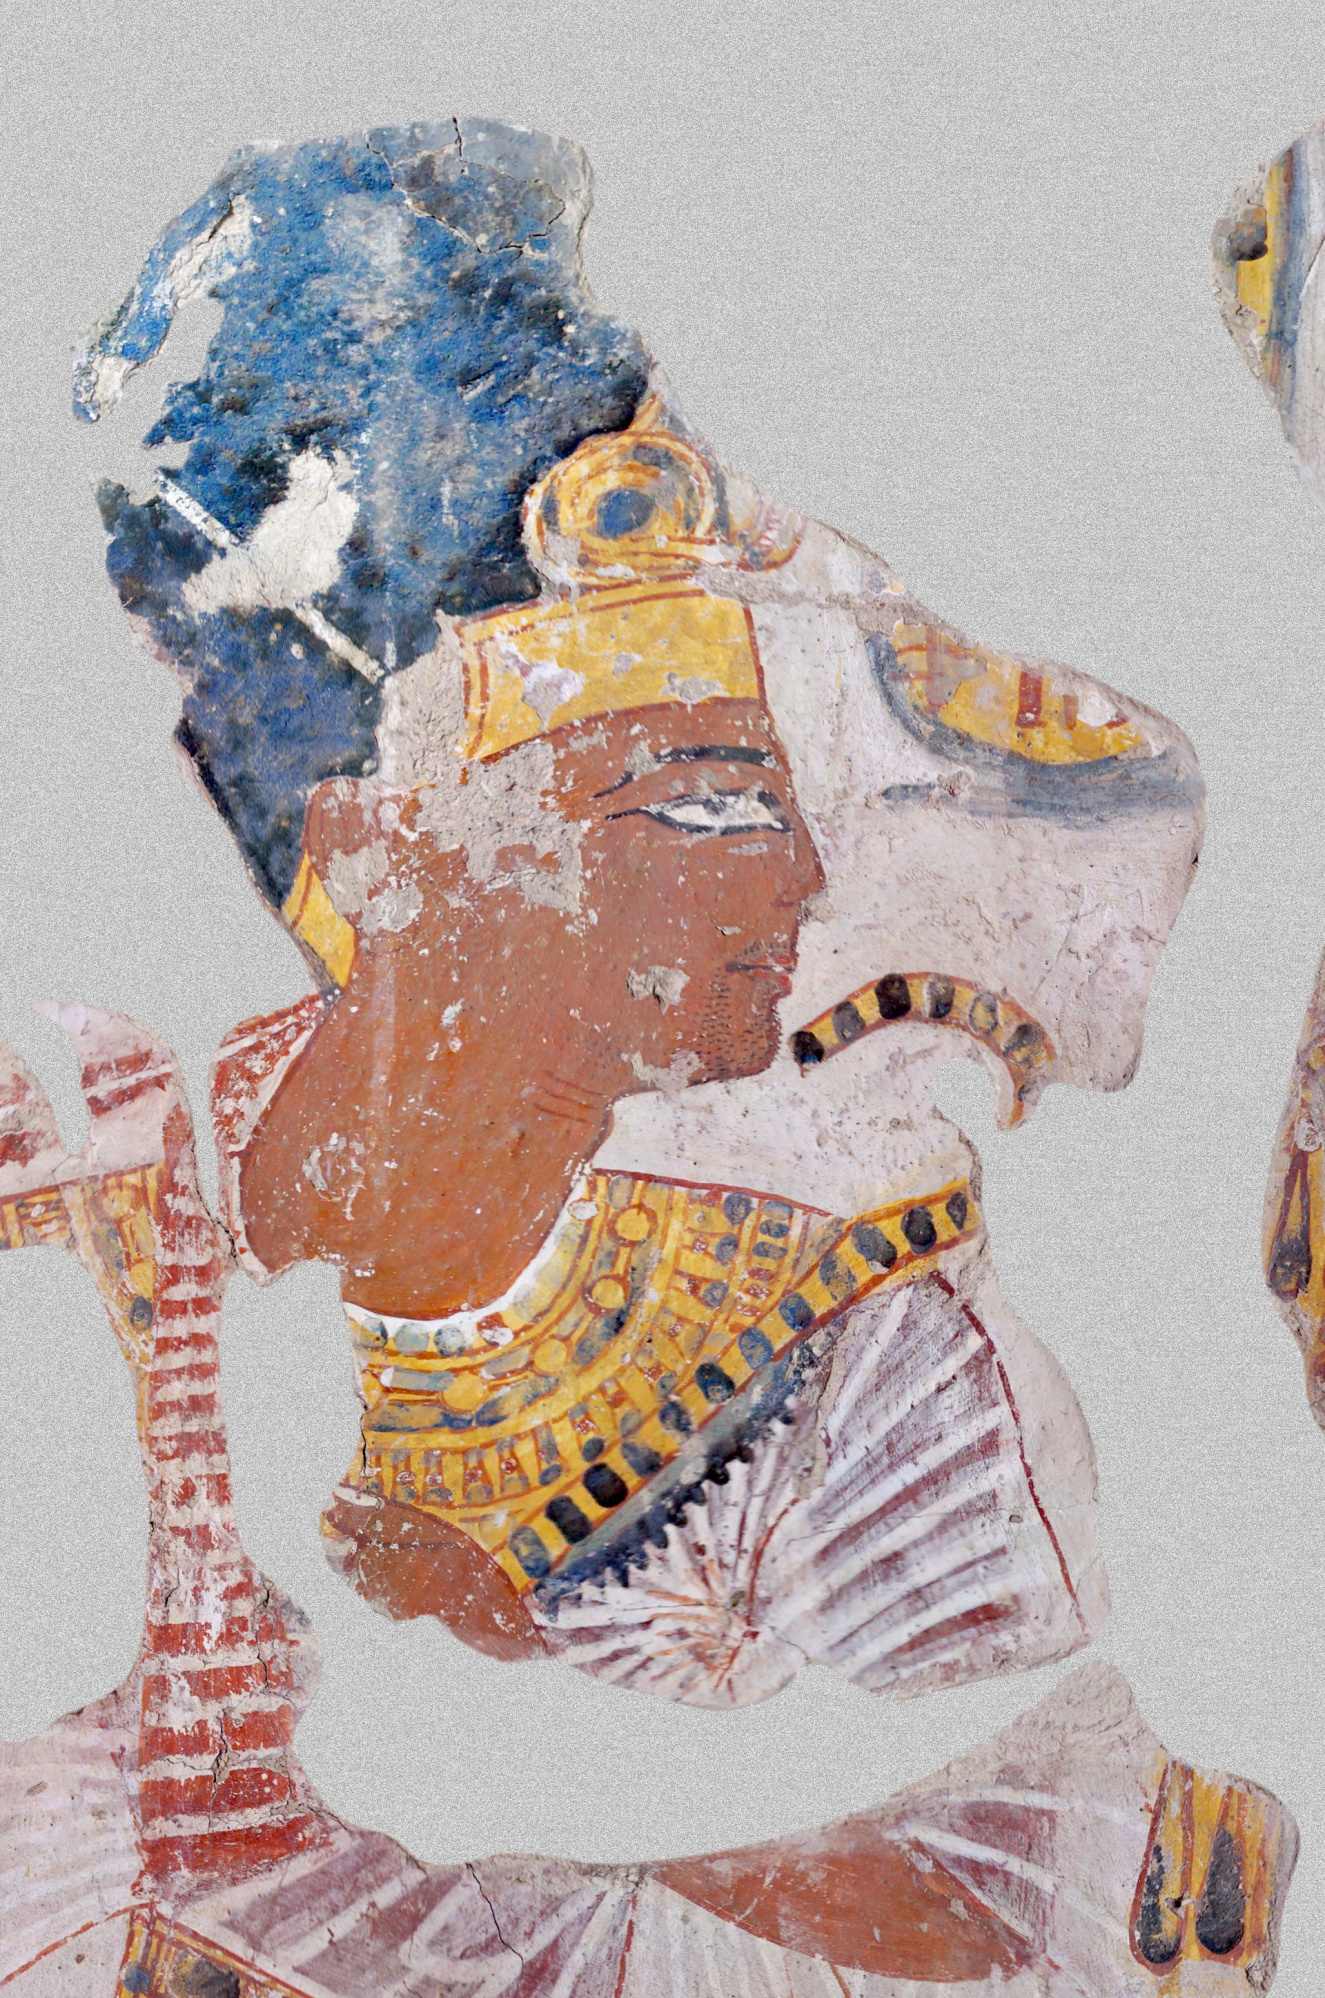 ਨਖਤਾਮੁਨ ਮਕਬਰੇ ਵਿੱਚ ਰਾਮਸੇਸ II ਦਾ ਪੋਰਟਰੇਟ, ਰਾਮੇਸੀਅਮ ਵਿੱਚ ਵੇਦੀ ਦੇ ਮੁਖੀ (ਕਬਰ TT 341, ਸੰਭਵ ਤੌਰ 'ਤੇ 20ਵਾਂ ਰਾਜਵੰਸ਼, ਲਗਭਗ 1100 BCE)।